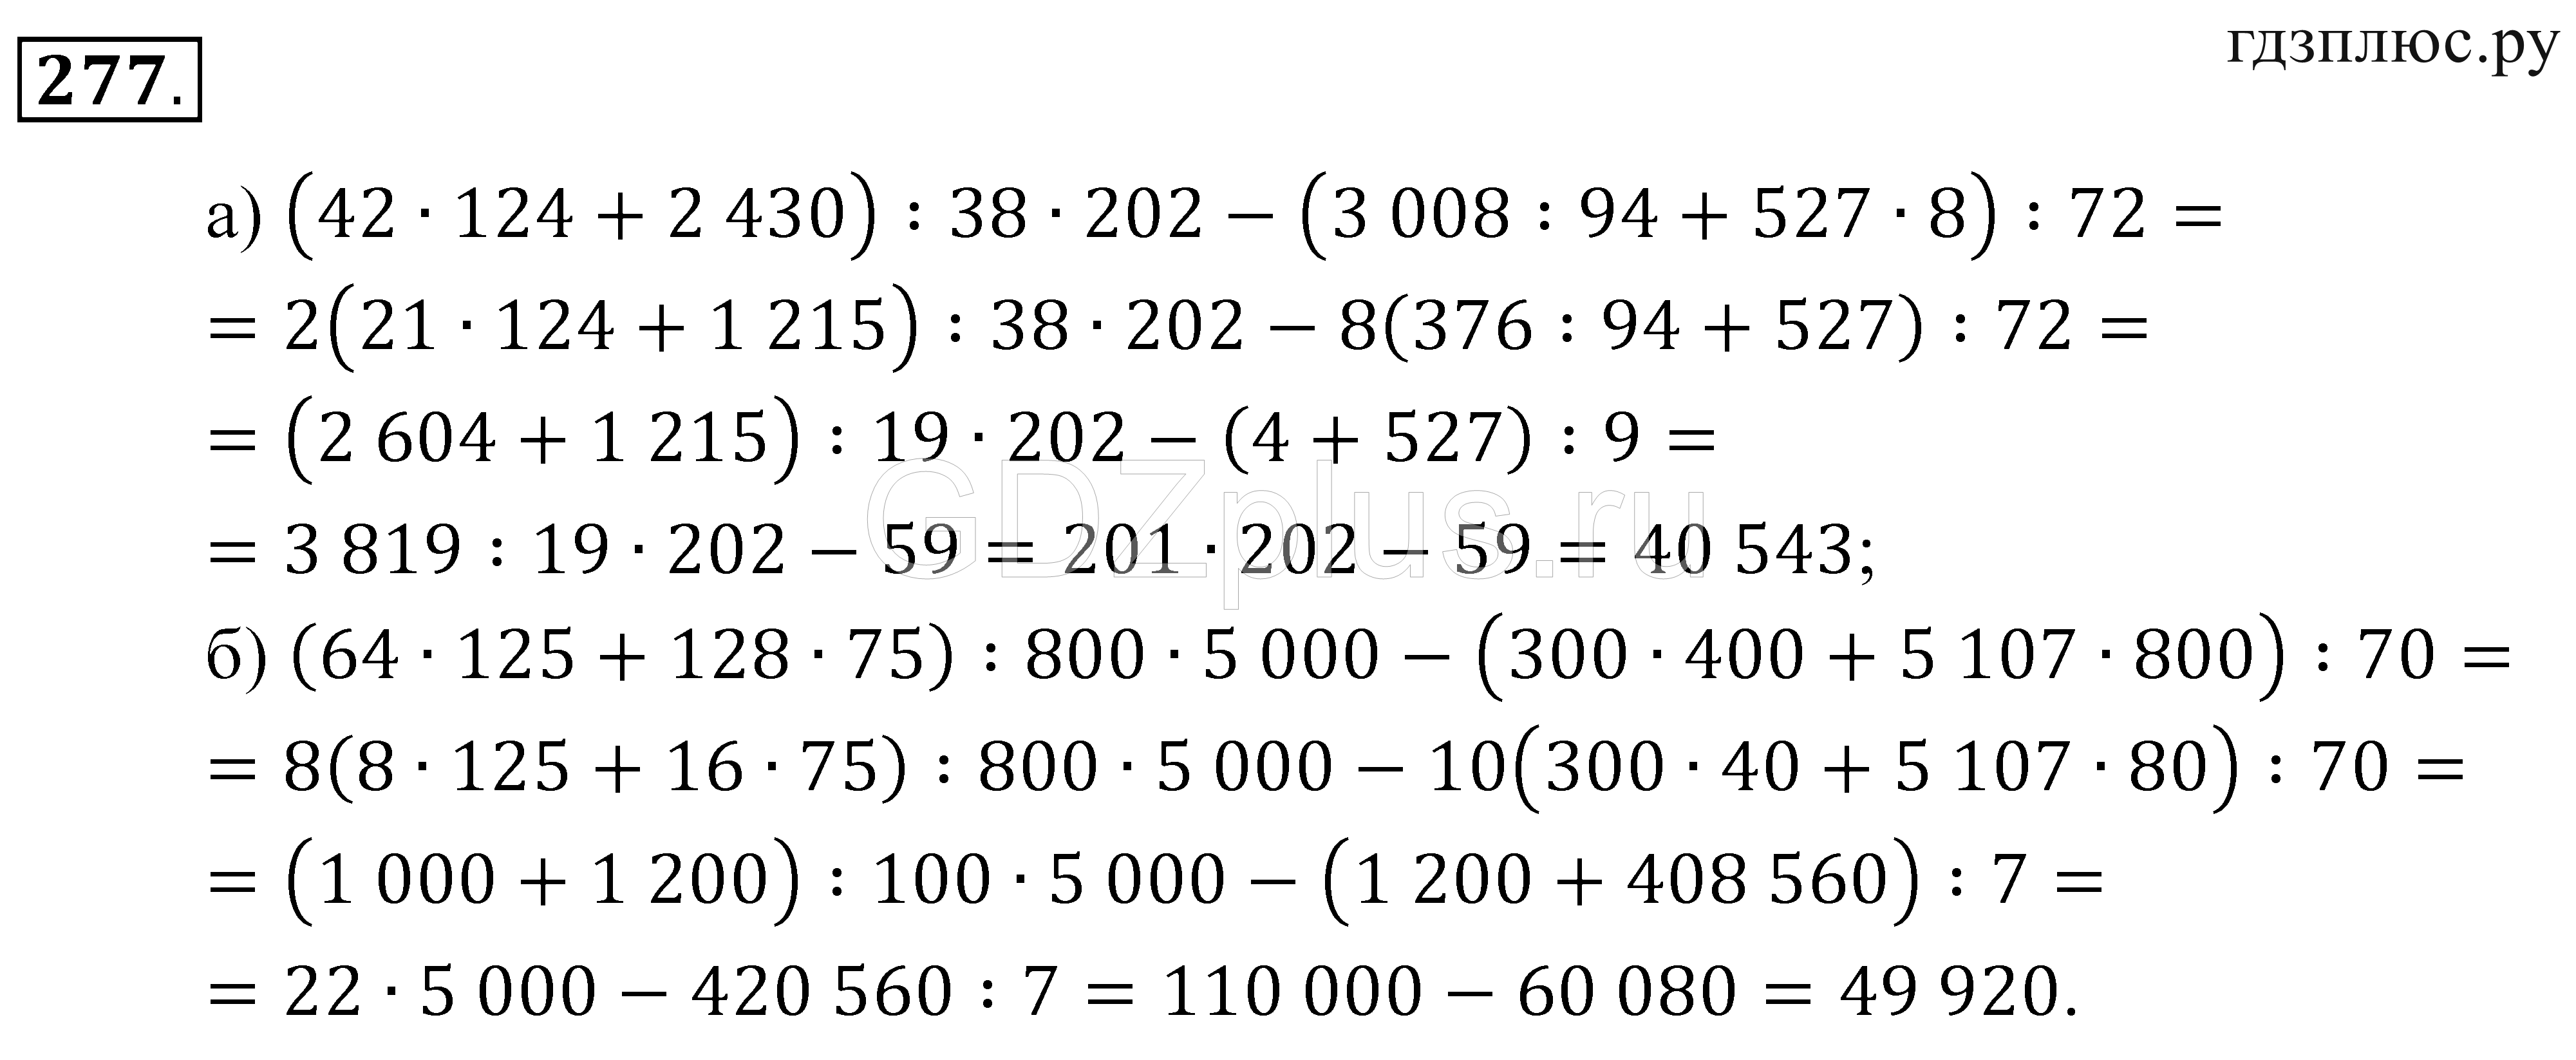 Математика с 50 номер 6